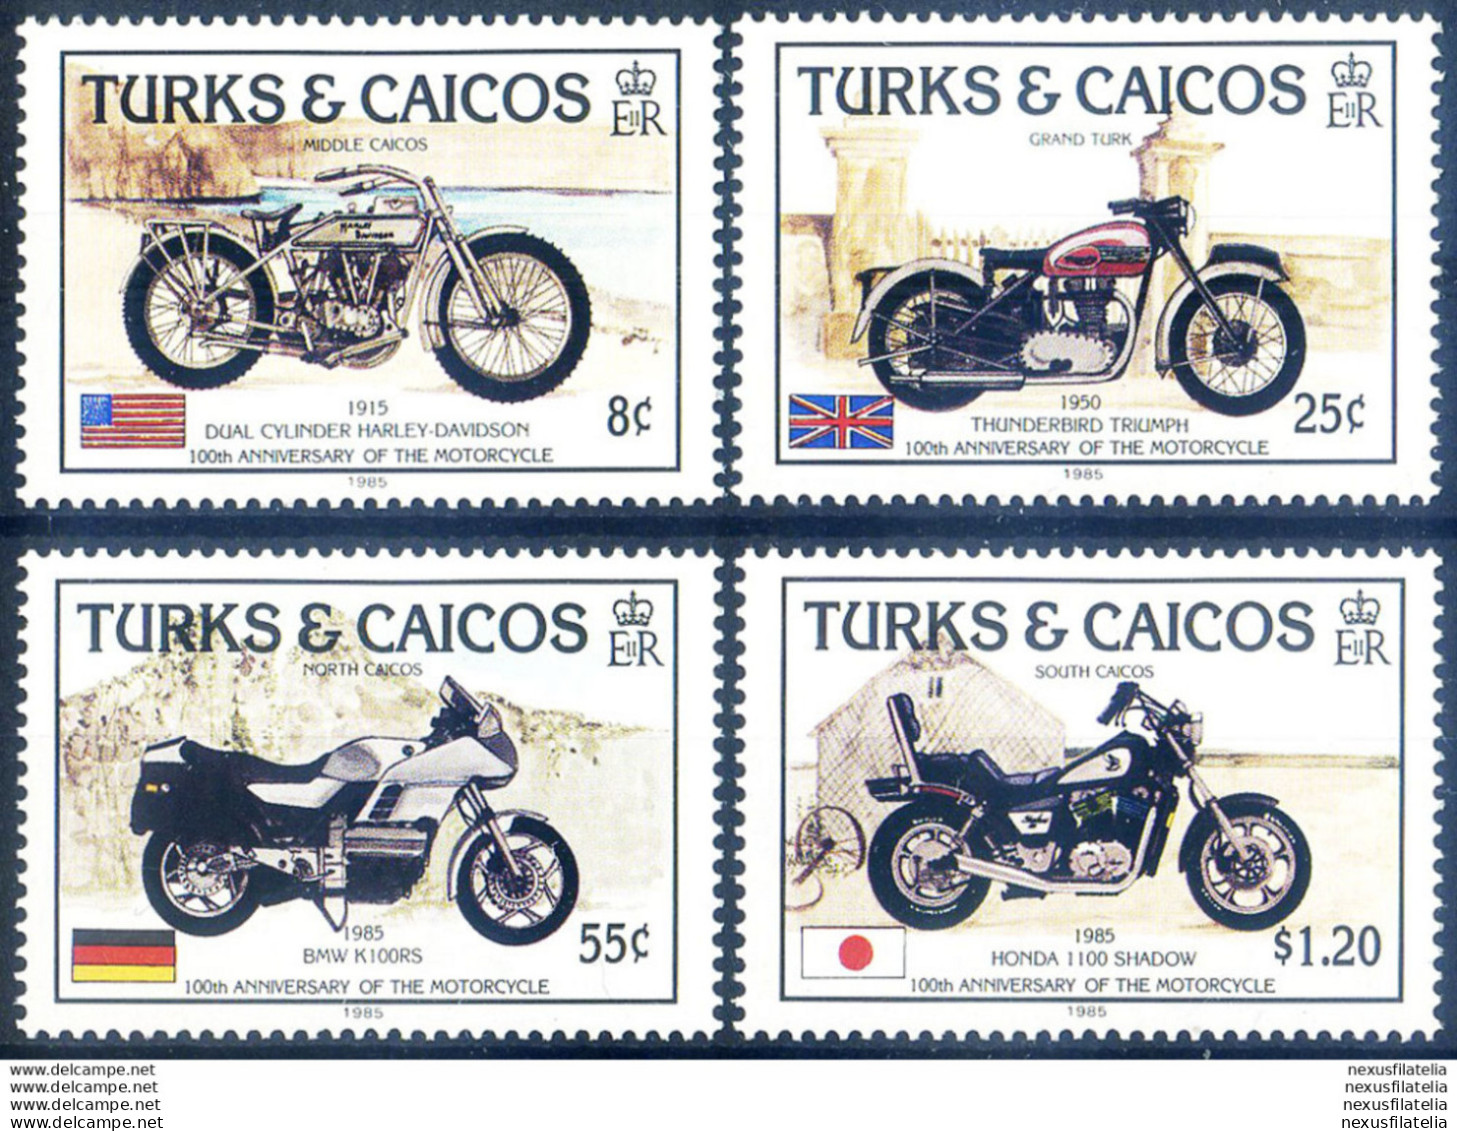 Motociclette 1985. - Turks & Caicos